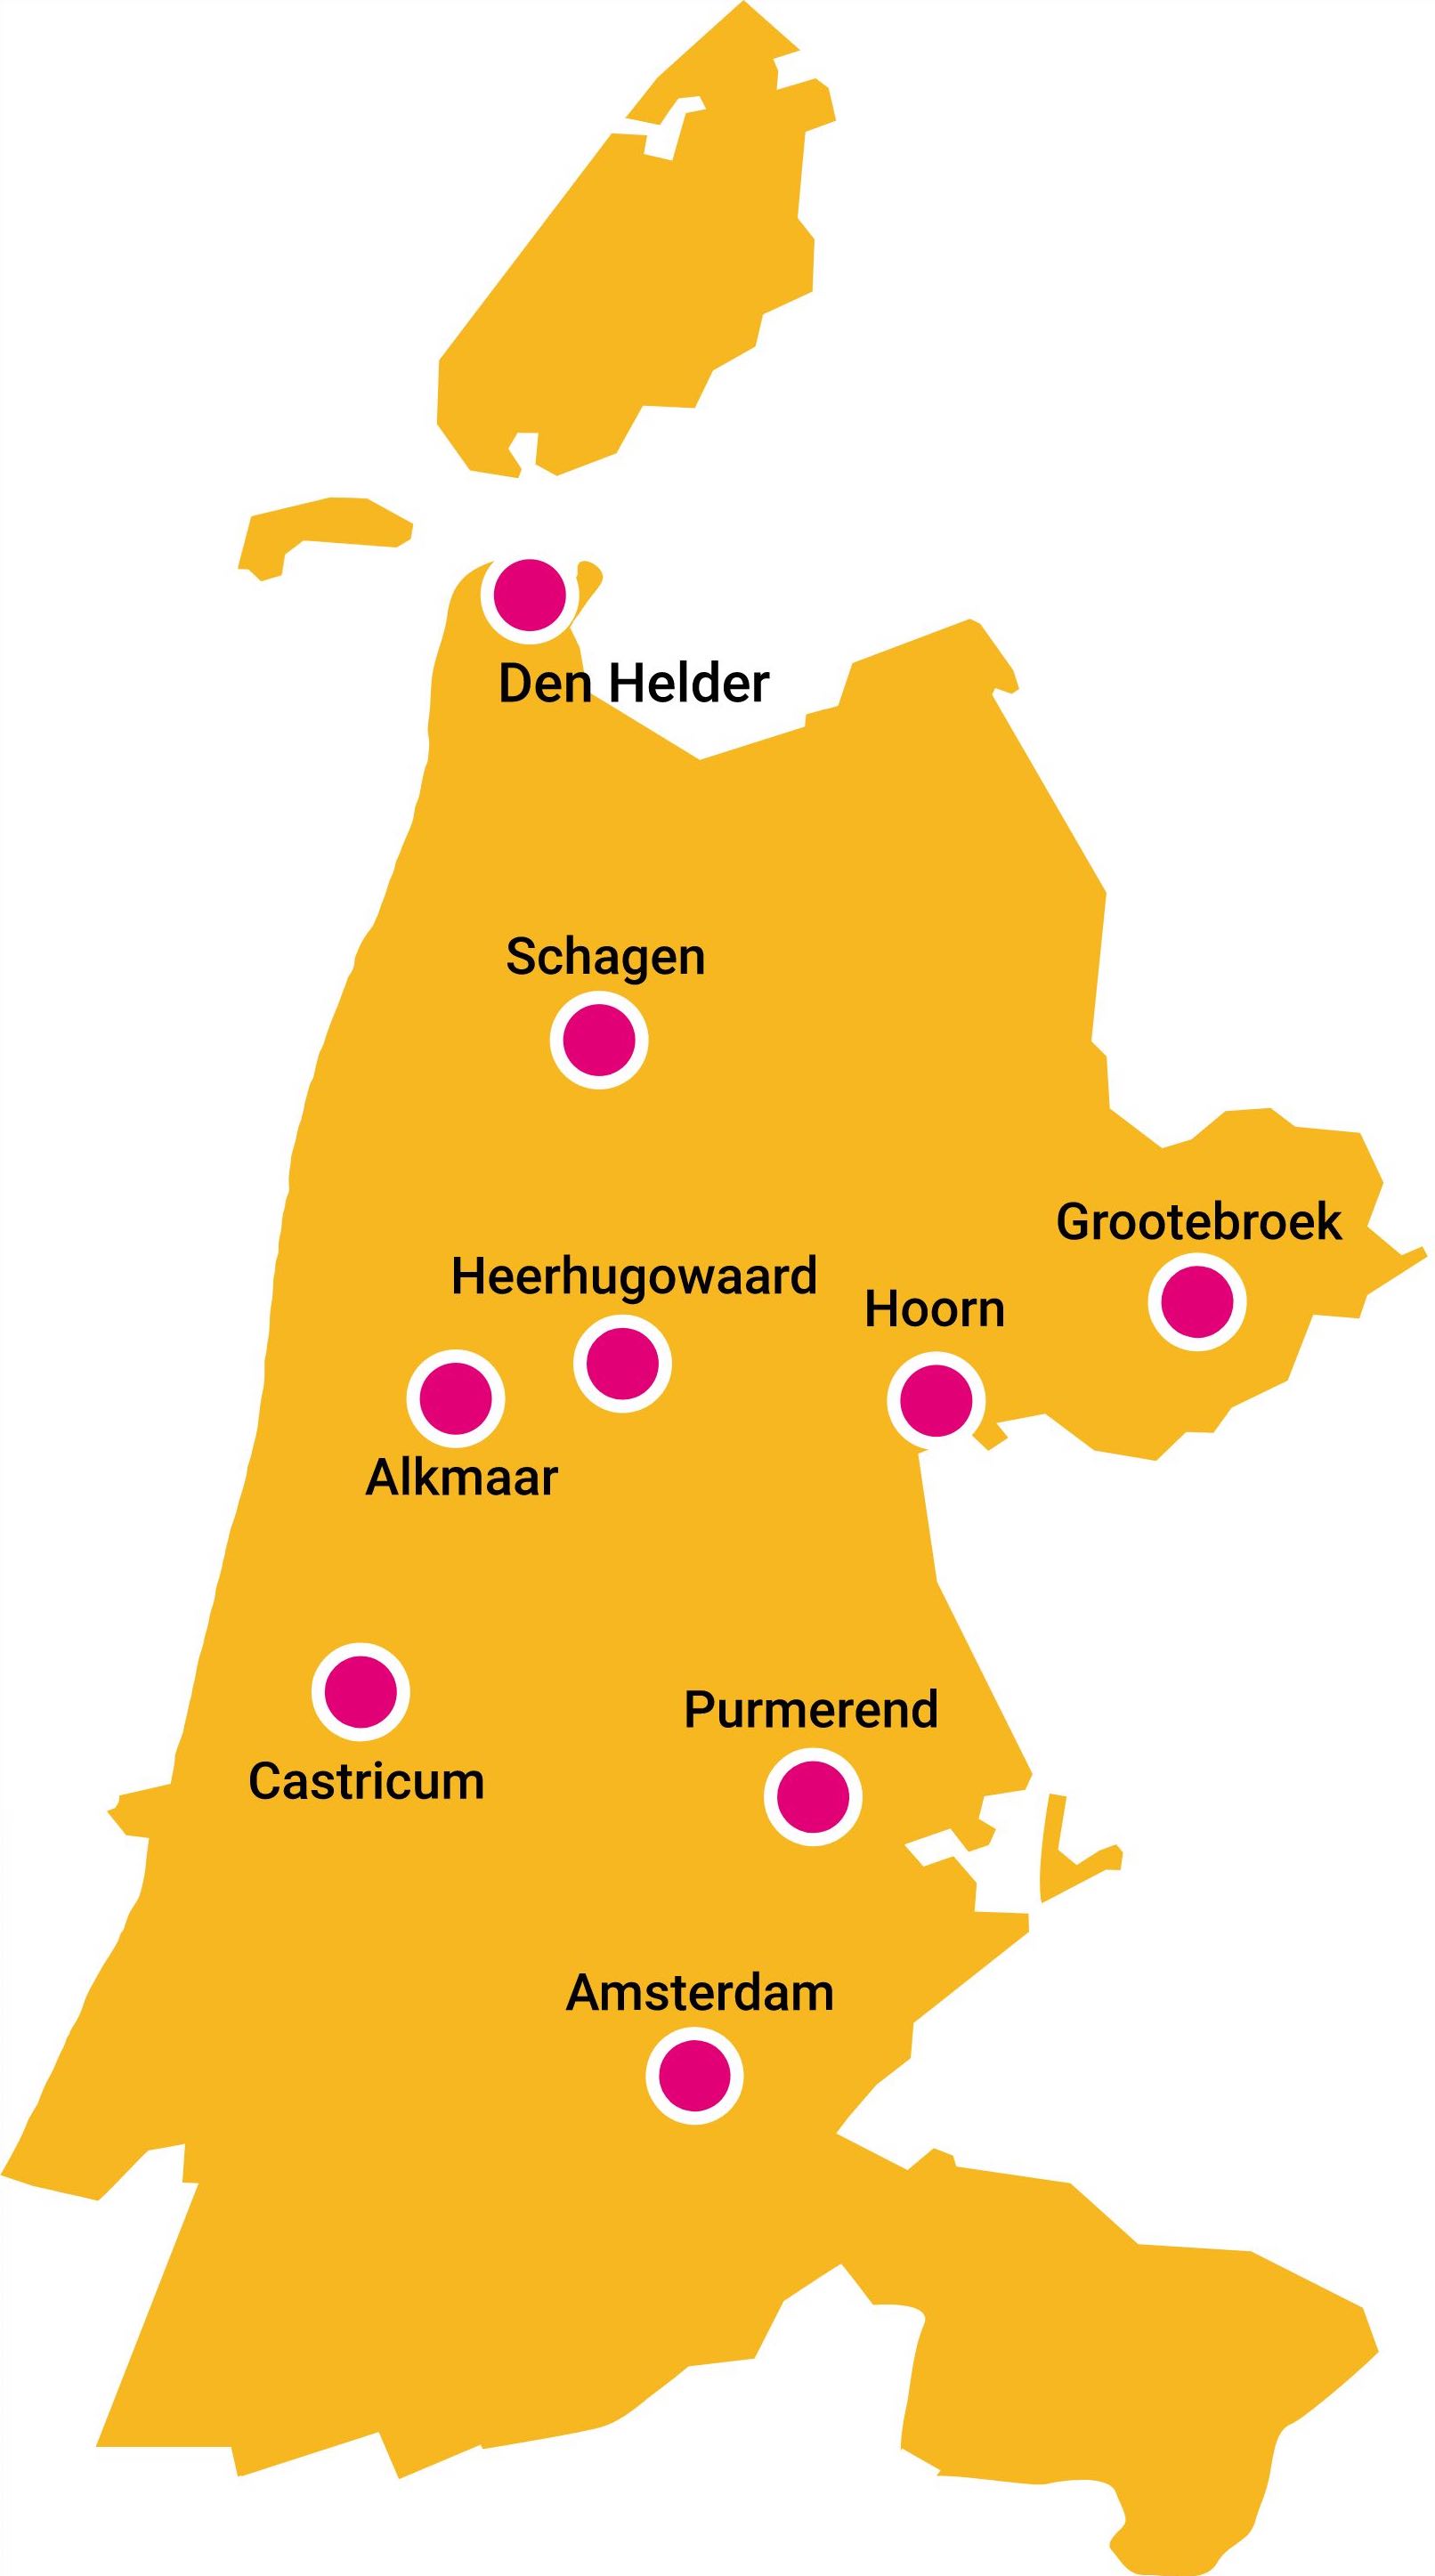 De verschillende Vonk locaties op een Noord-Holland kaart.